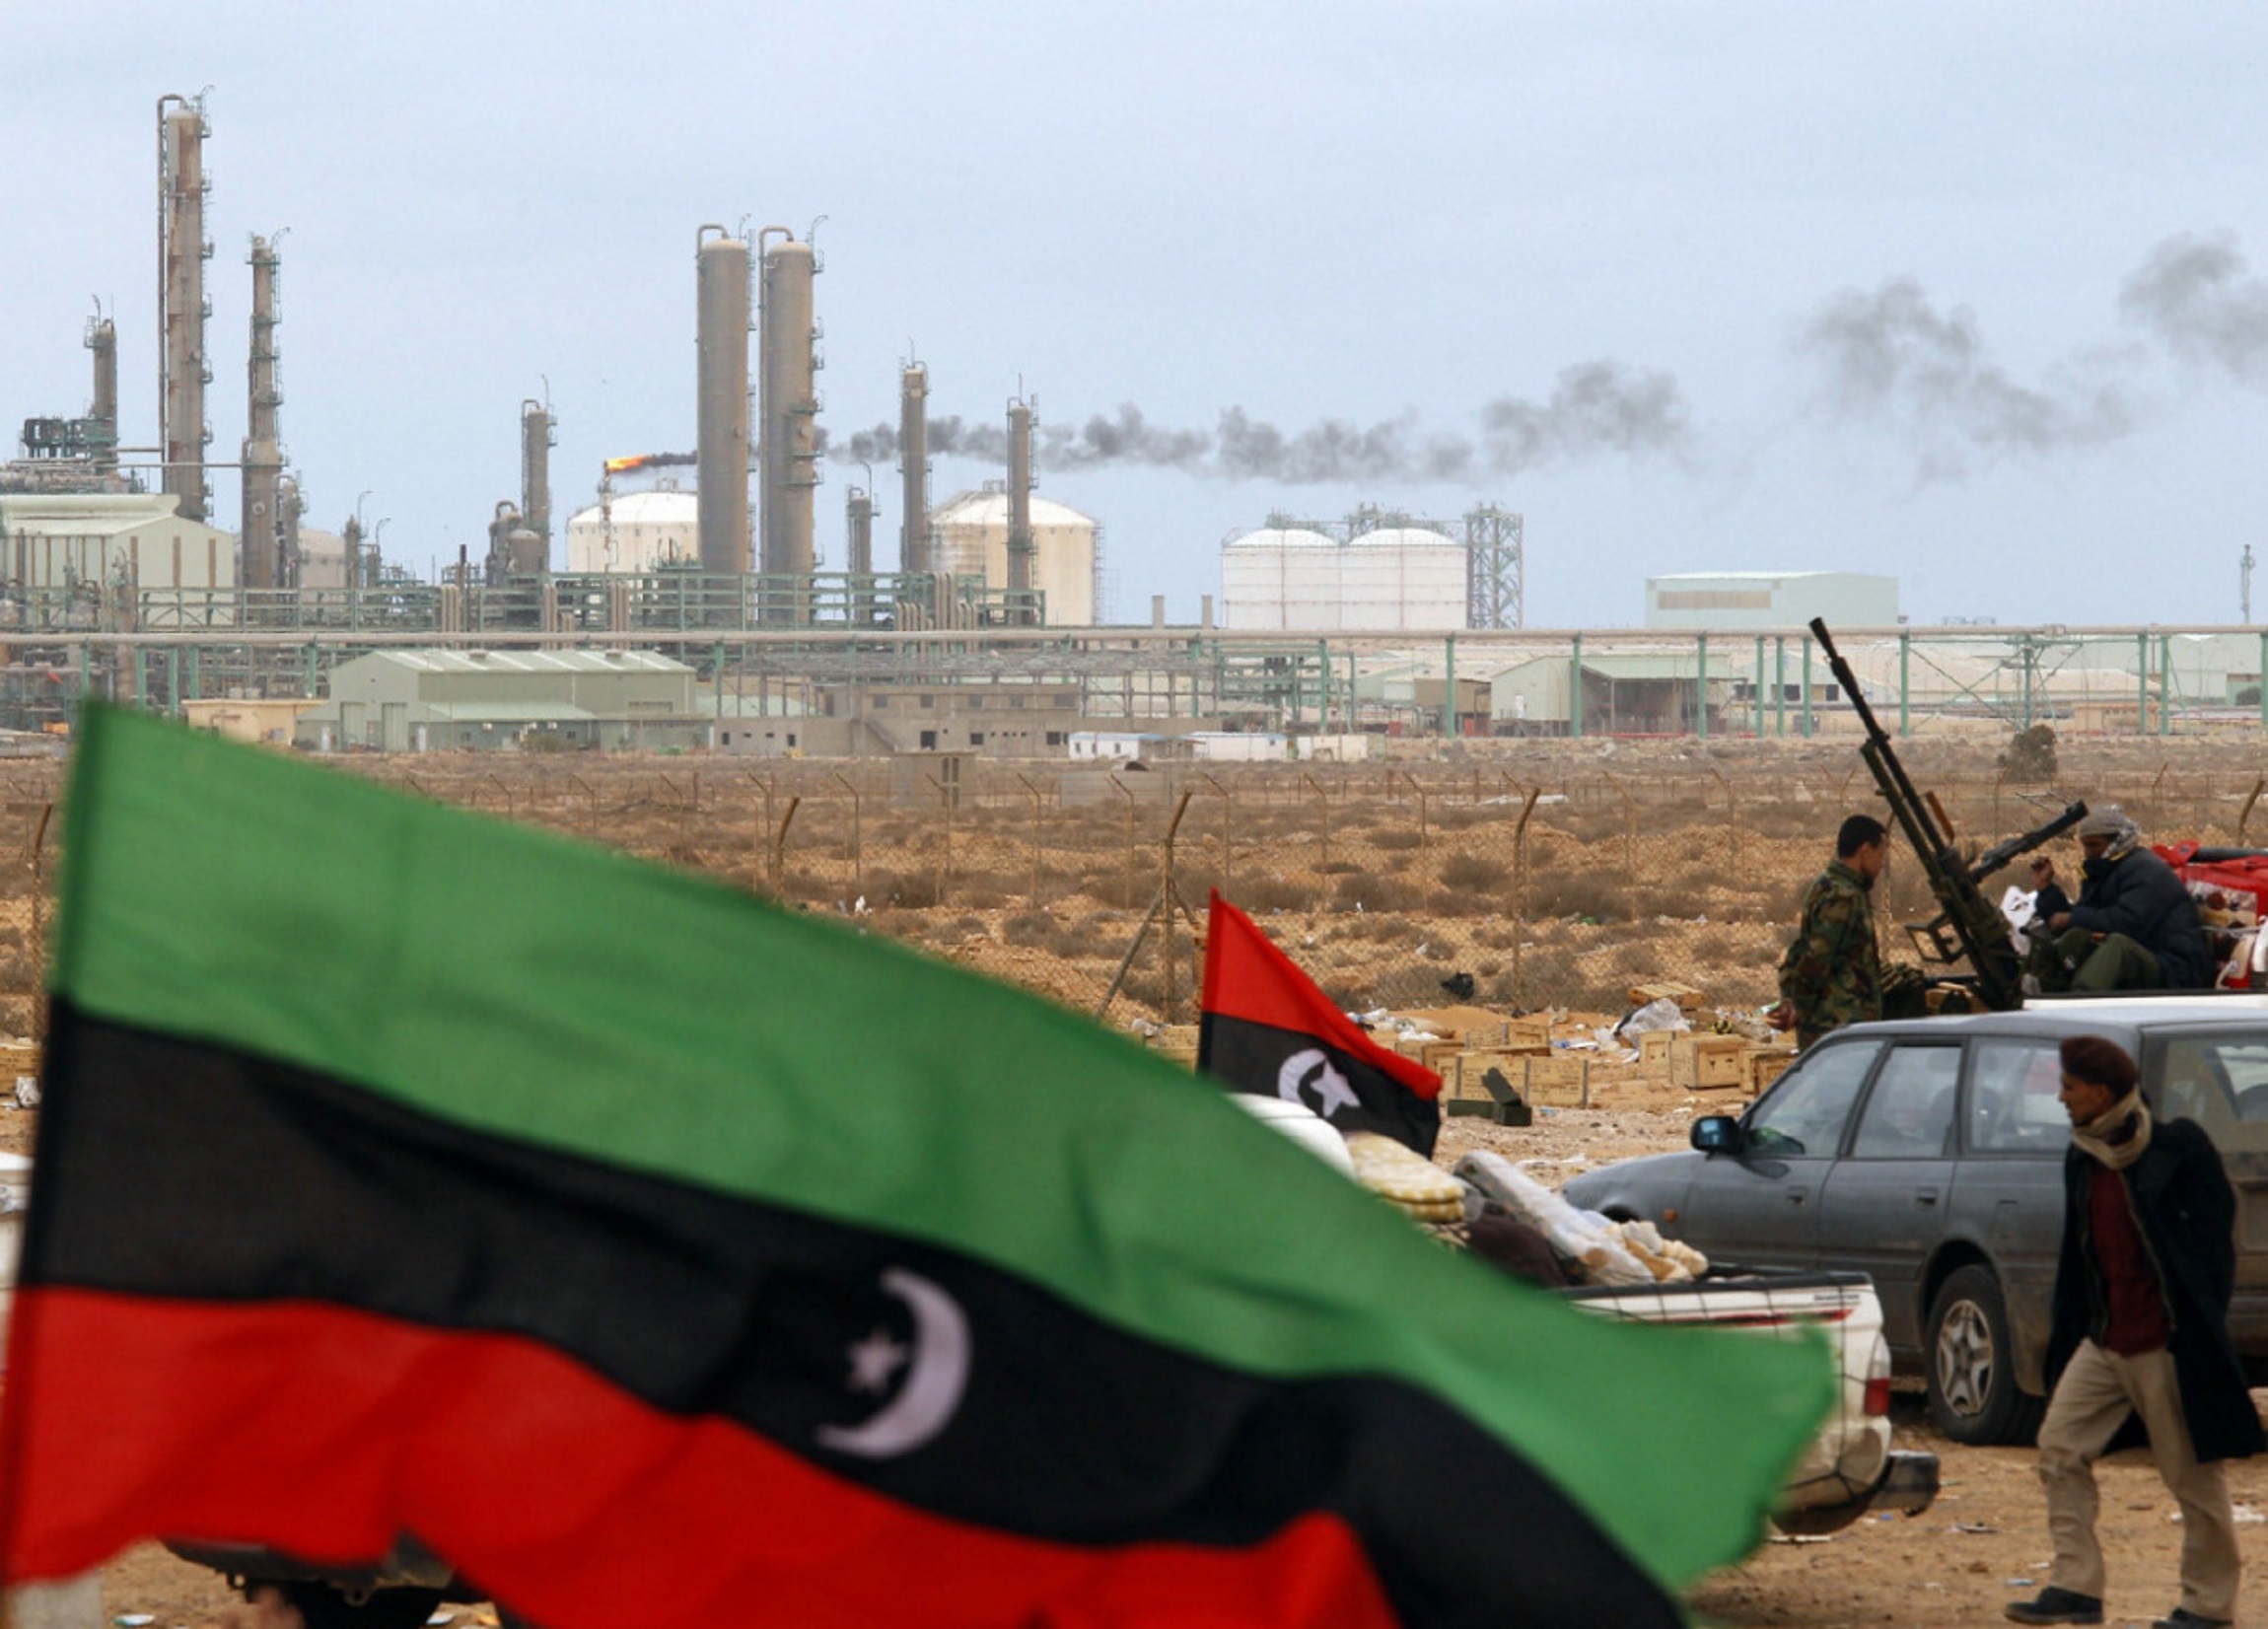 Λιβύη: Χτύπημα με ρουκέτες στην Τρίπολη! 5 άμαχοι νεκροί – “Το έκανε ο Χάφταρ”